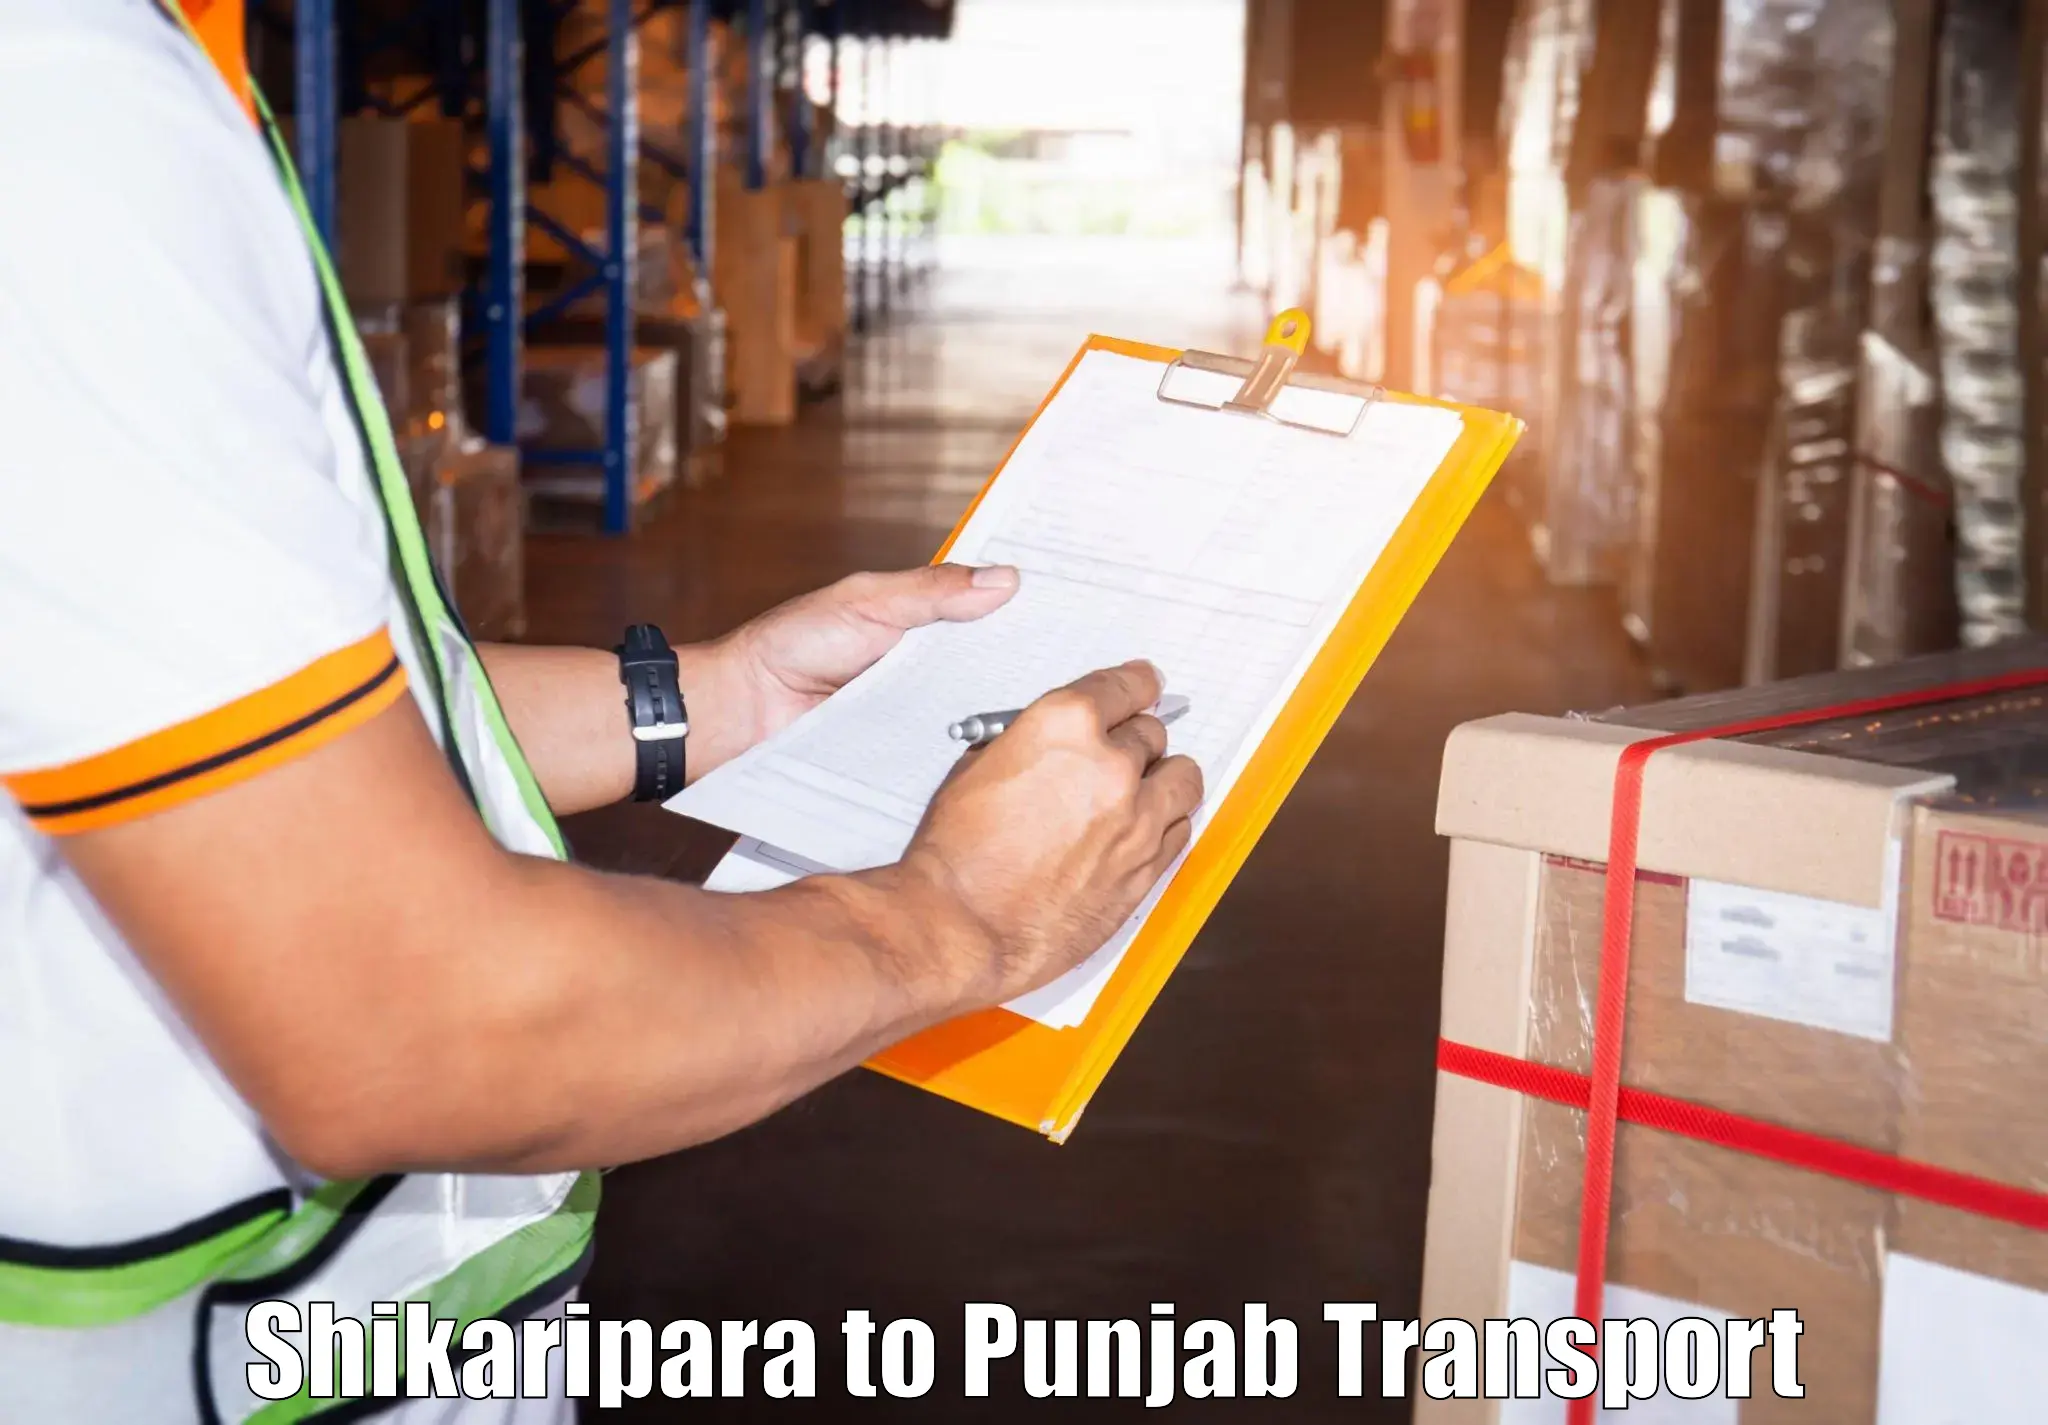 Daily parcel service transport Shikaripara to Jhunir